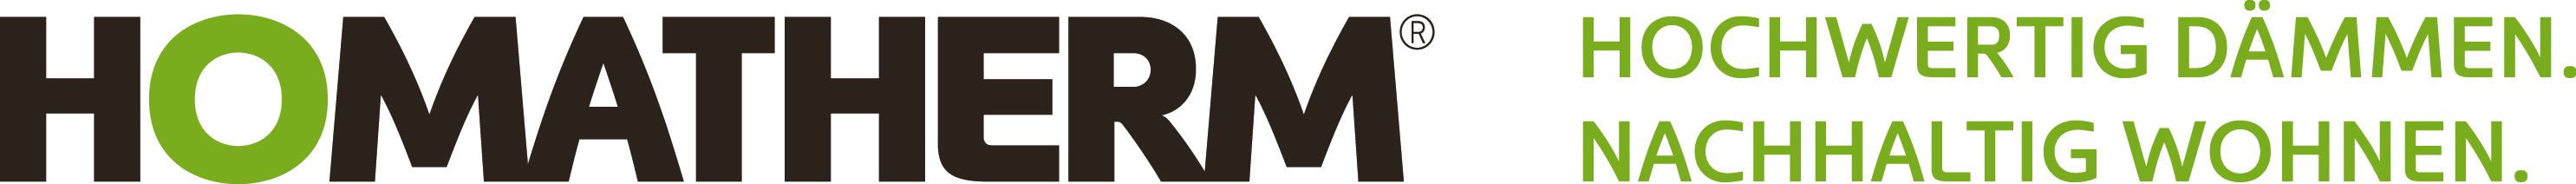 HOMATHERM Logo&Claim